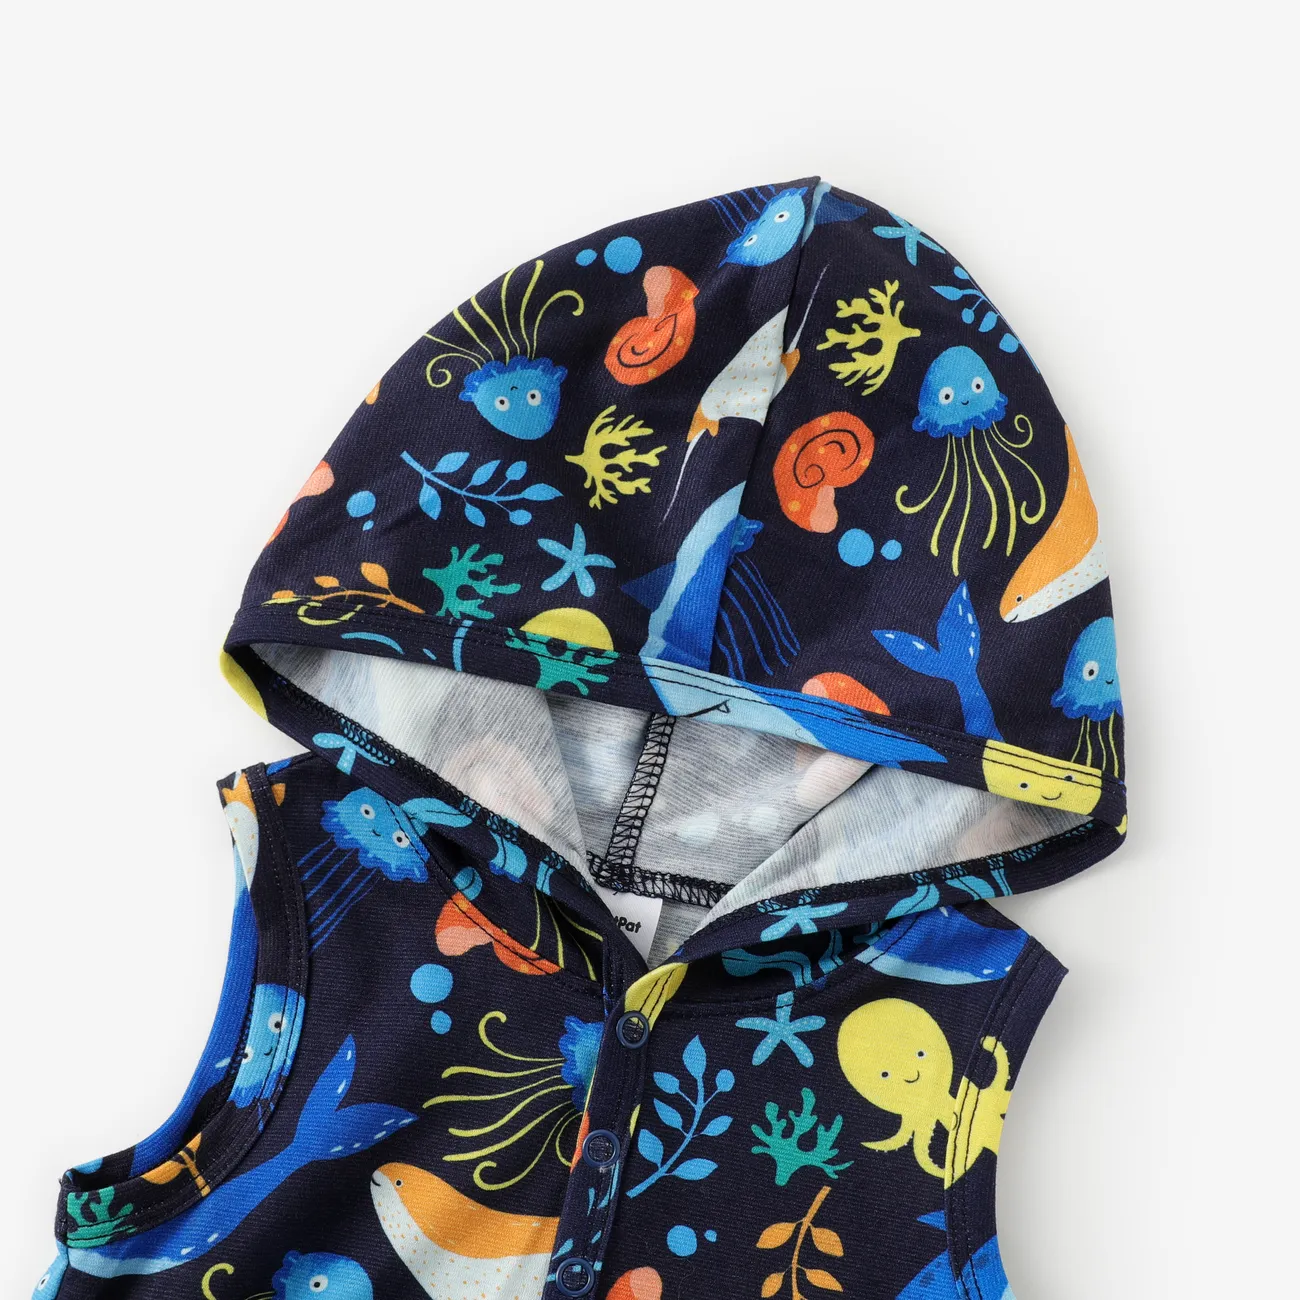 Baby Boy Marine Animal Print Pyjama Jumpsuit mit Kapuze dunkelblau big image 1